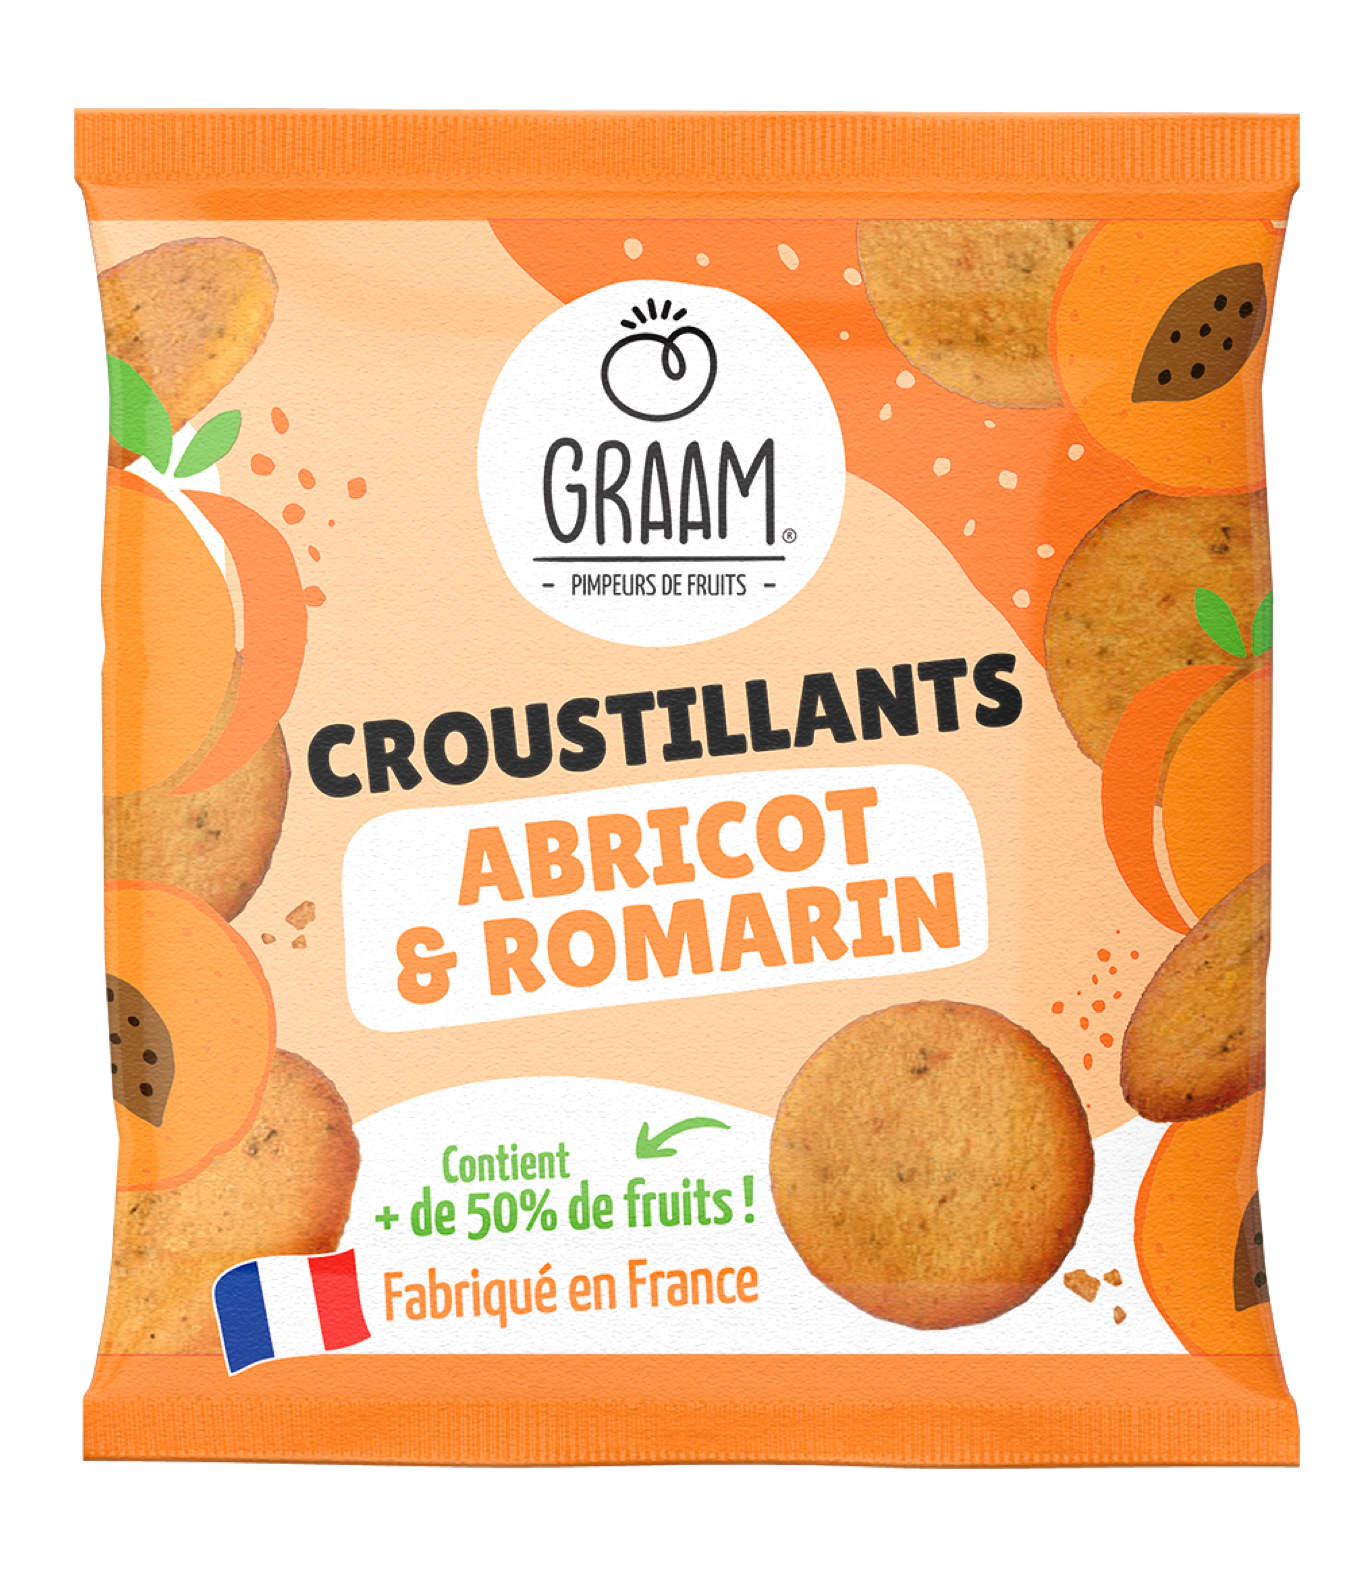 GRAAM croustillants abricot romarin - Après les légumes, Graam "pimpe" les fruits !